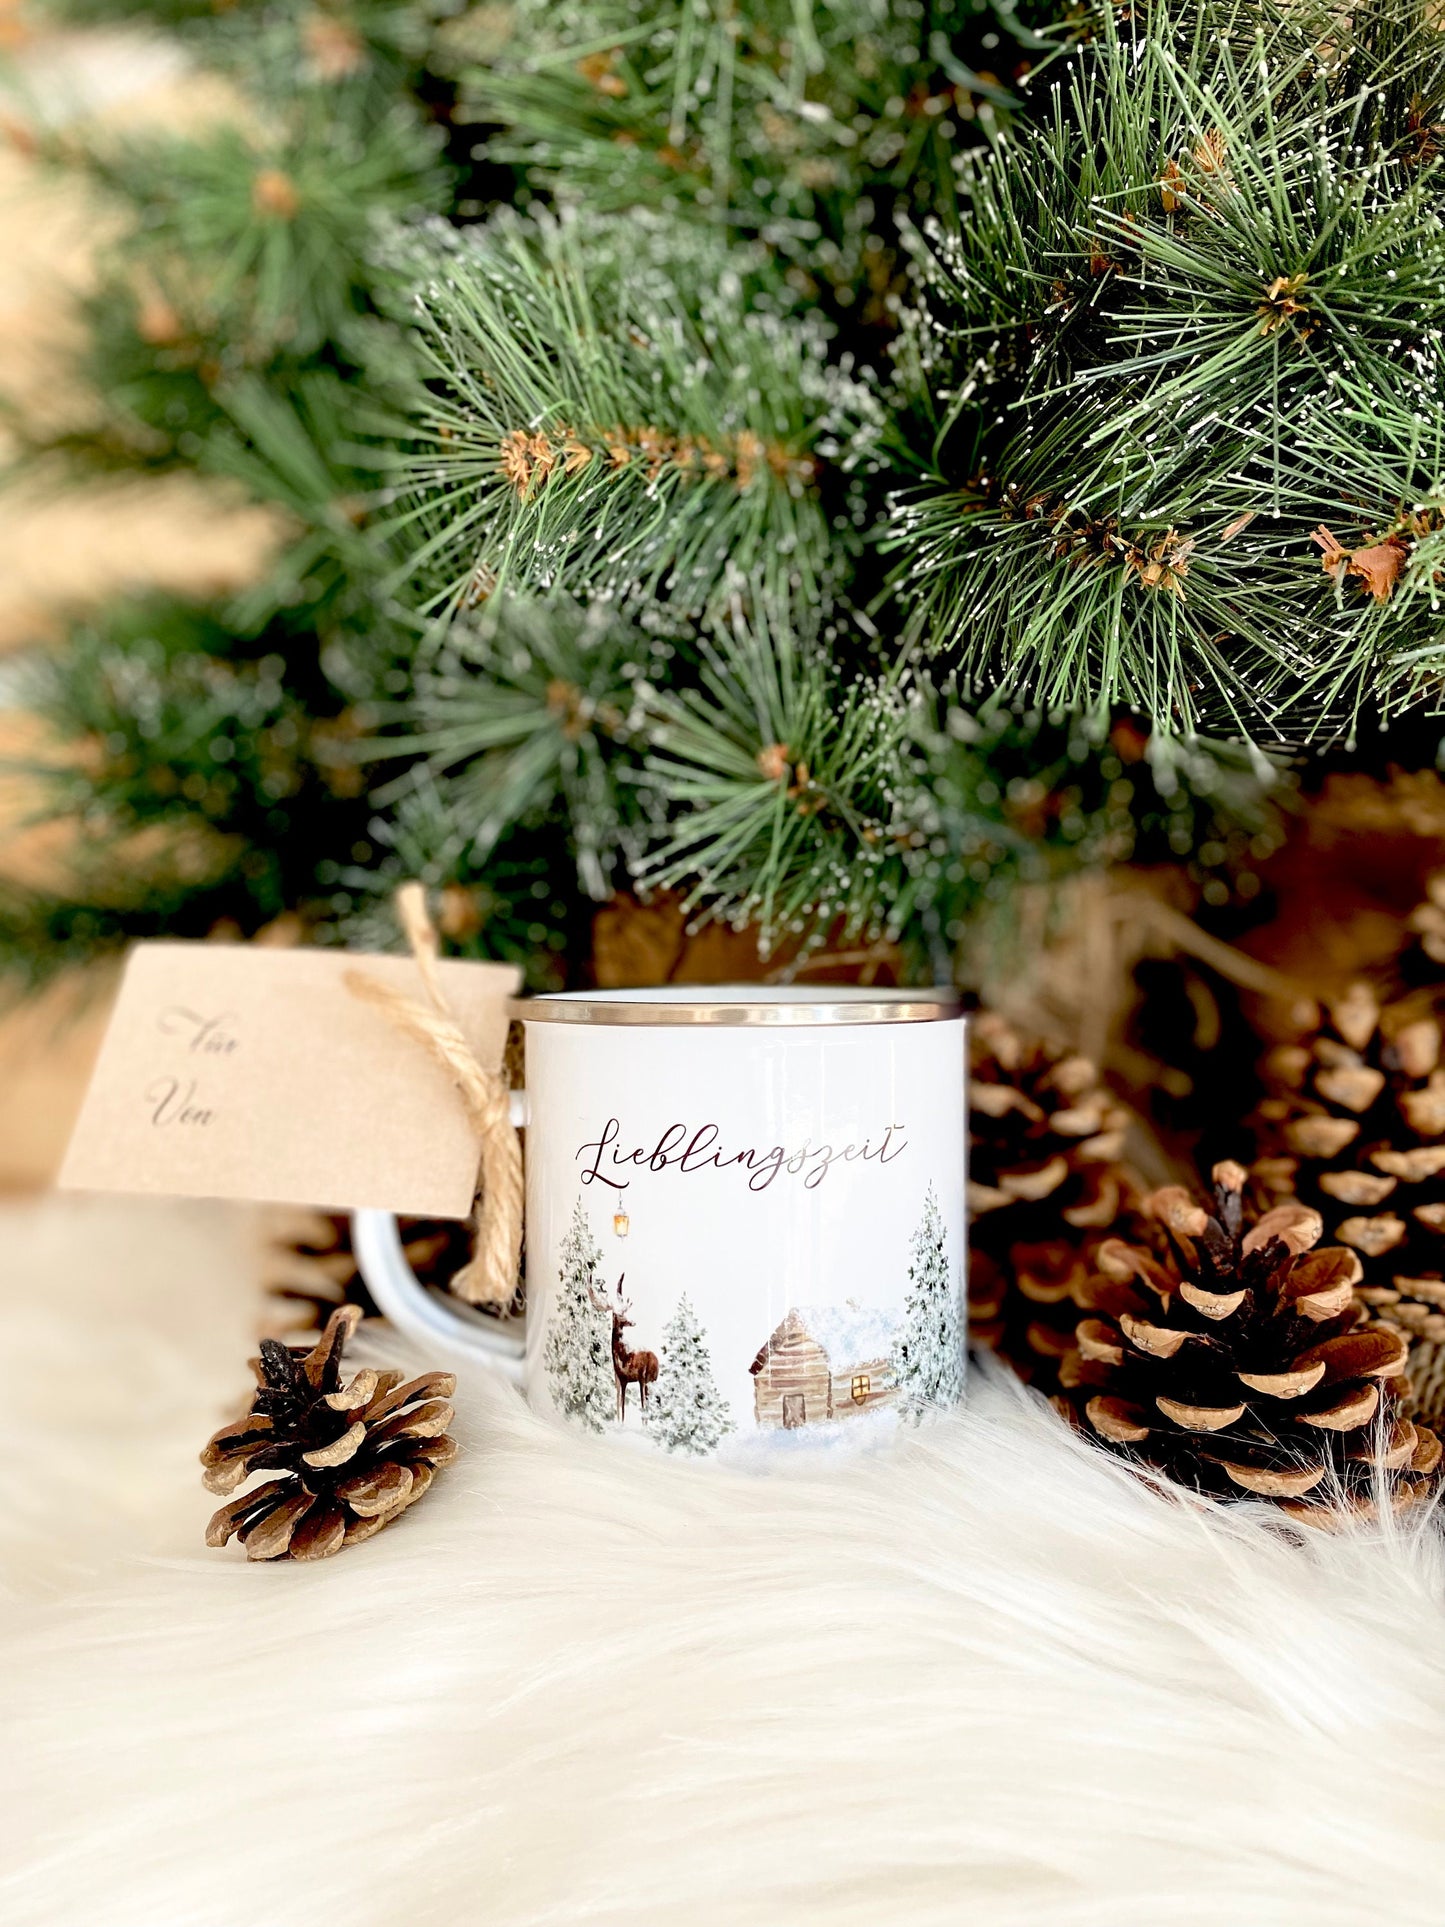 Tasse "Lieblingszeit" | Besonderes Tassengeschenk mit Anhänger zum Beschriften | Perfekte kleine Geschenkidee zu Weihnachten